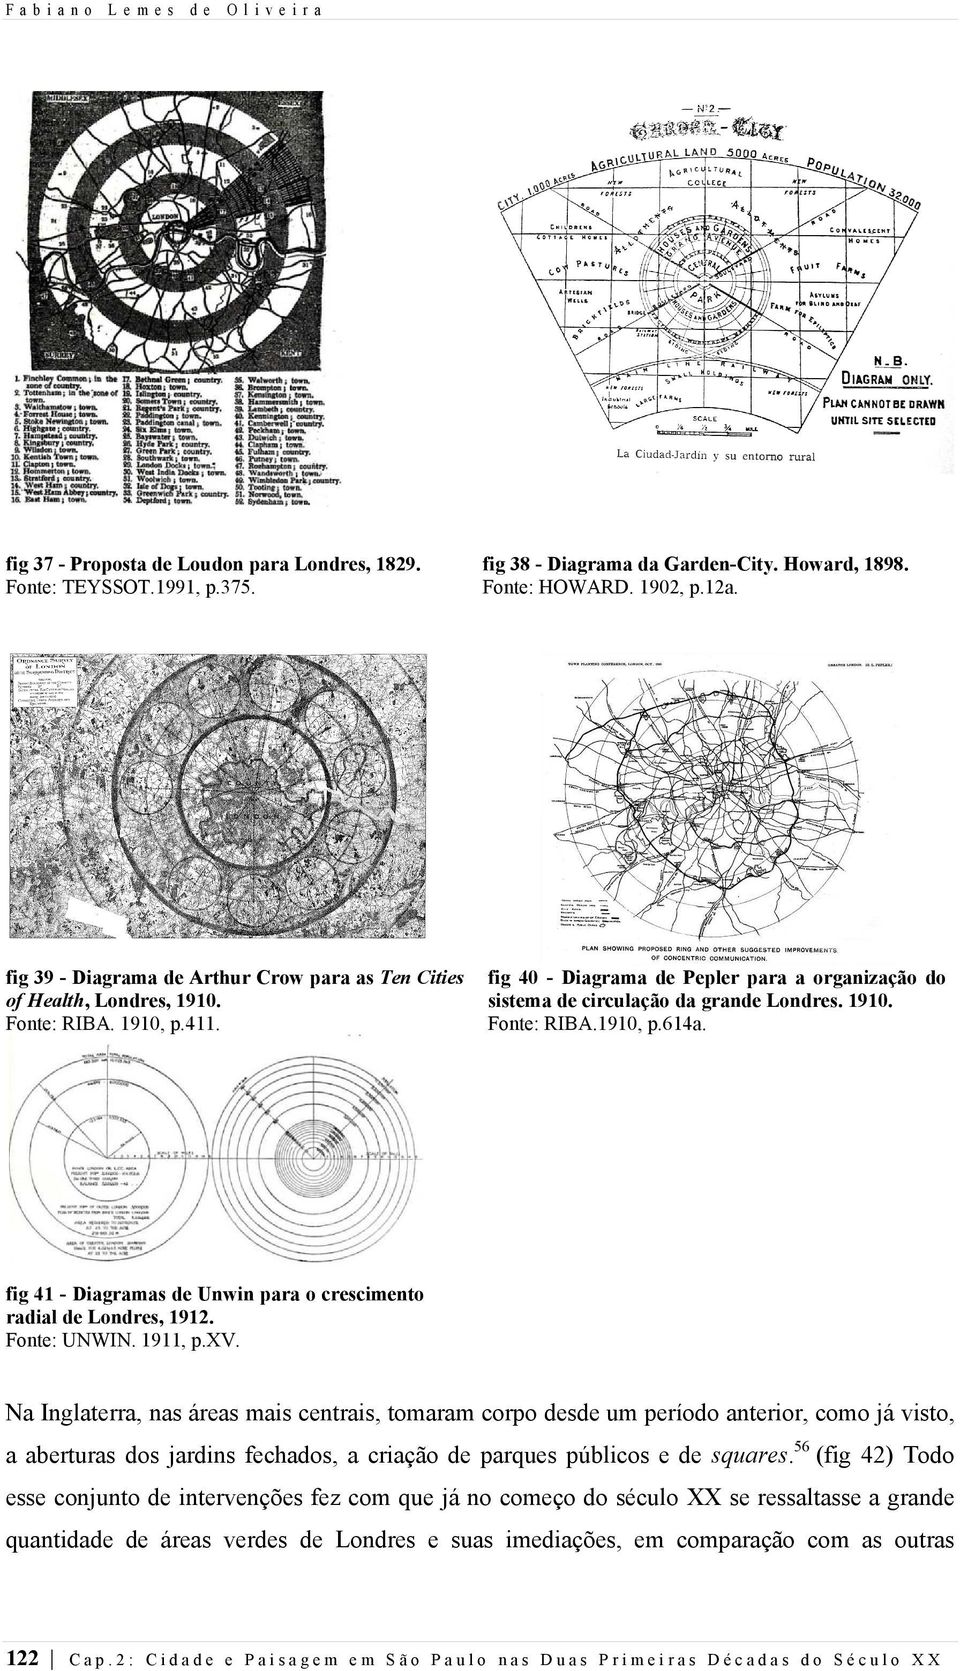 fig 41 - Diagramas de Unwin para o crescimento radial de Londres, 1912. Fonte: UNWIN. 1911, p.xv.